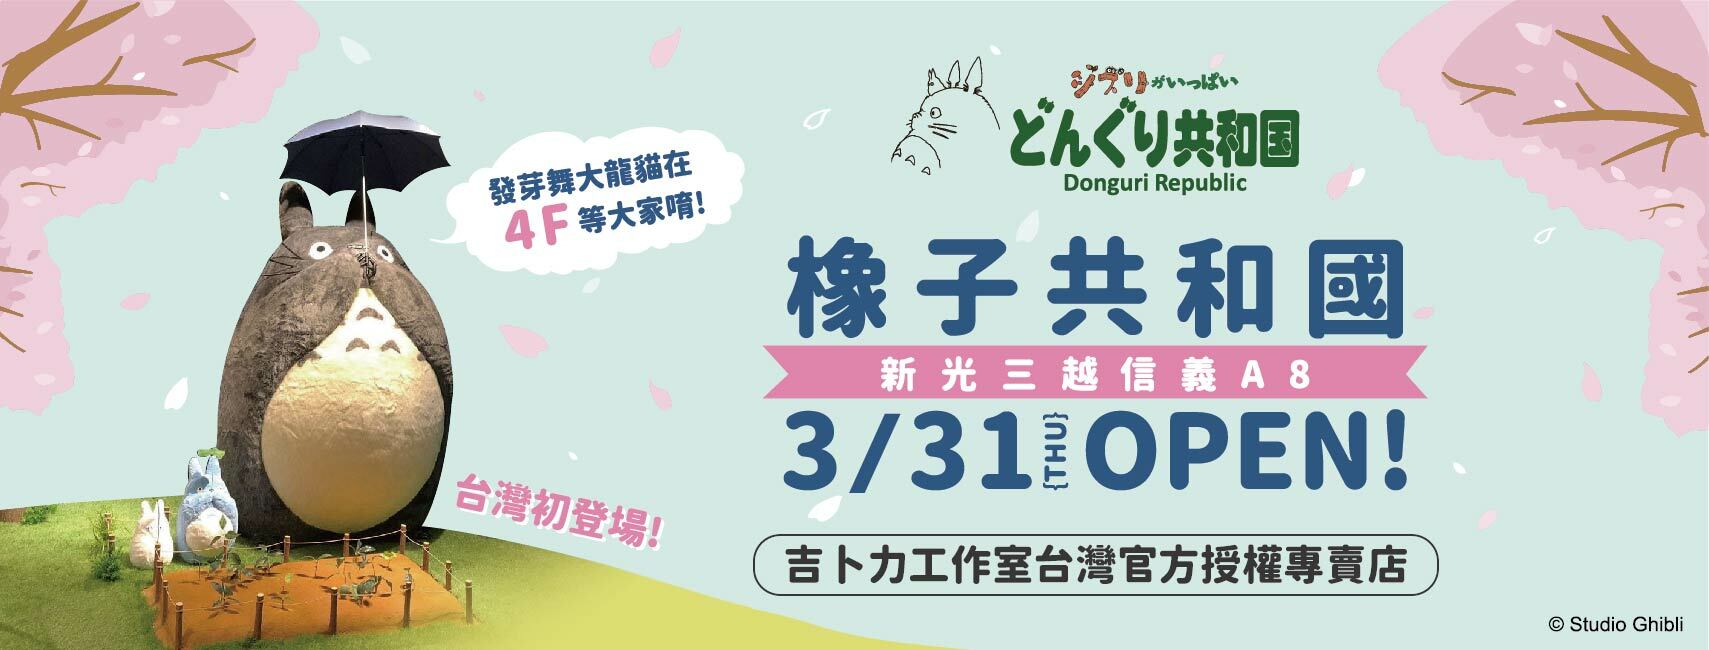 開幕活動】橡子共和國台北信義A8店3/31盛大開幕！